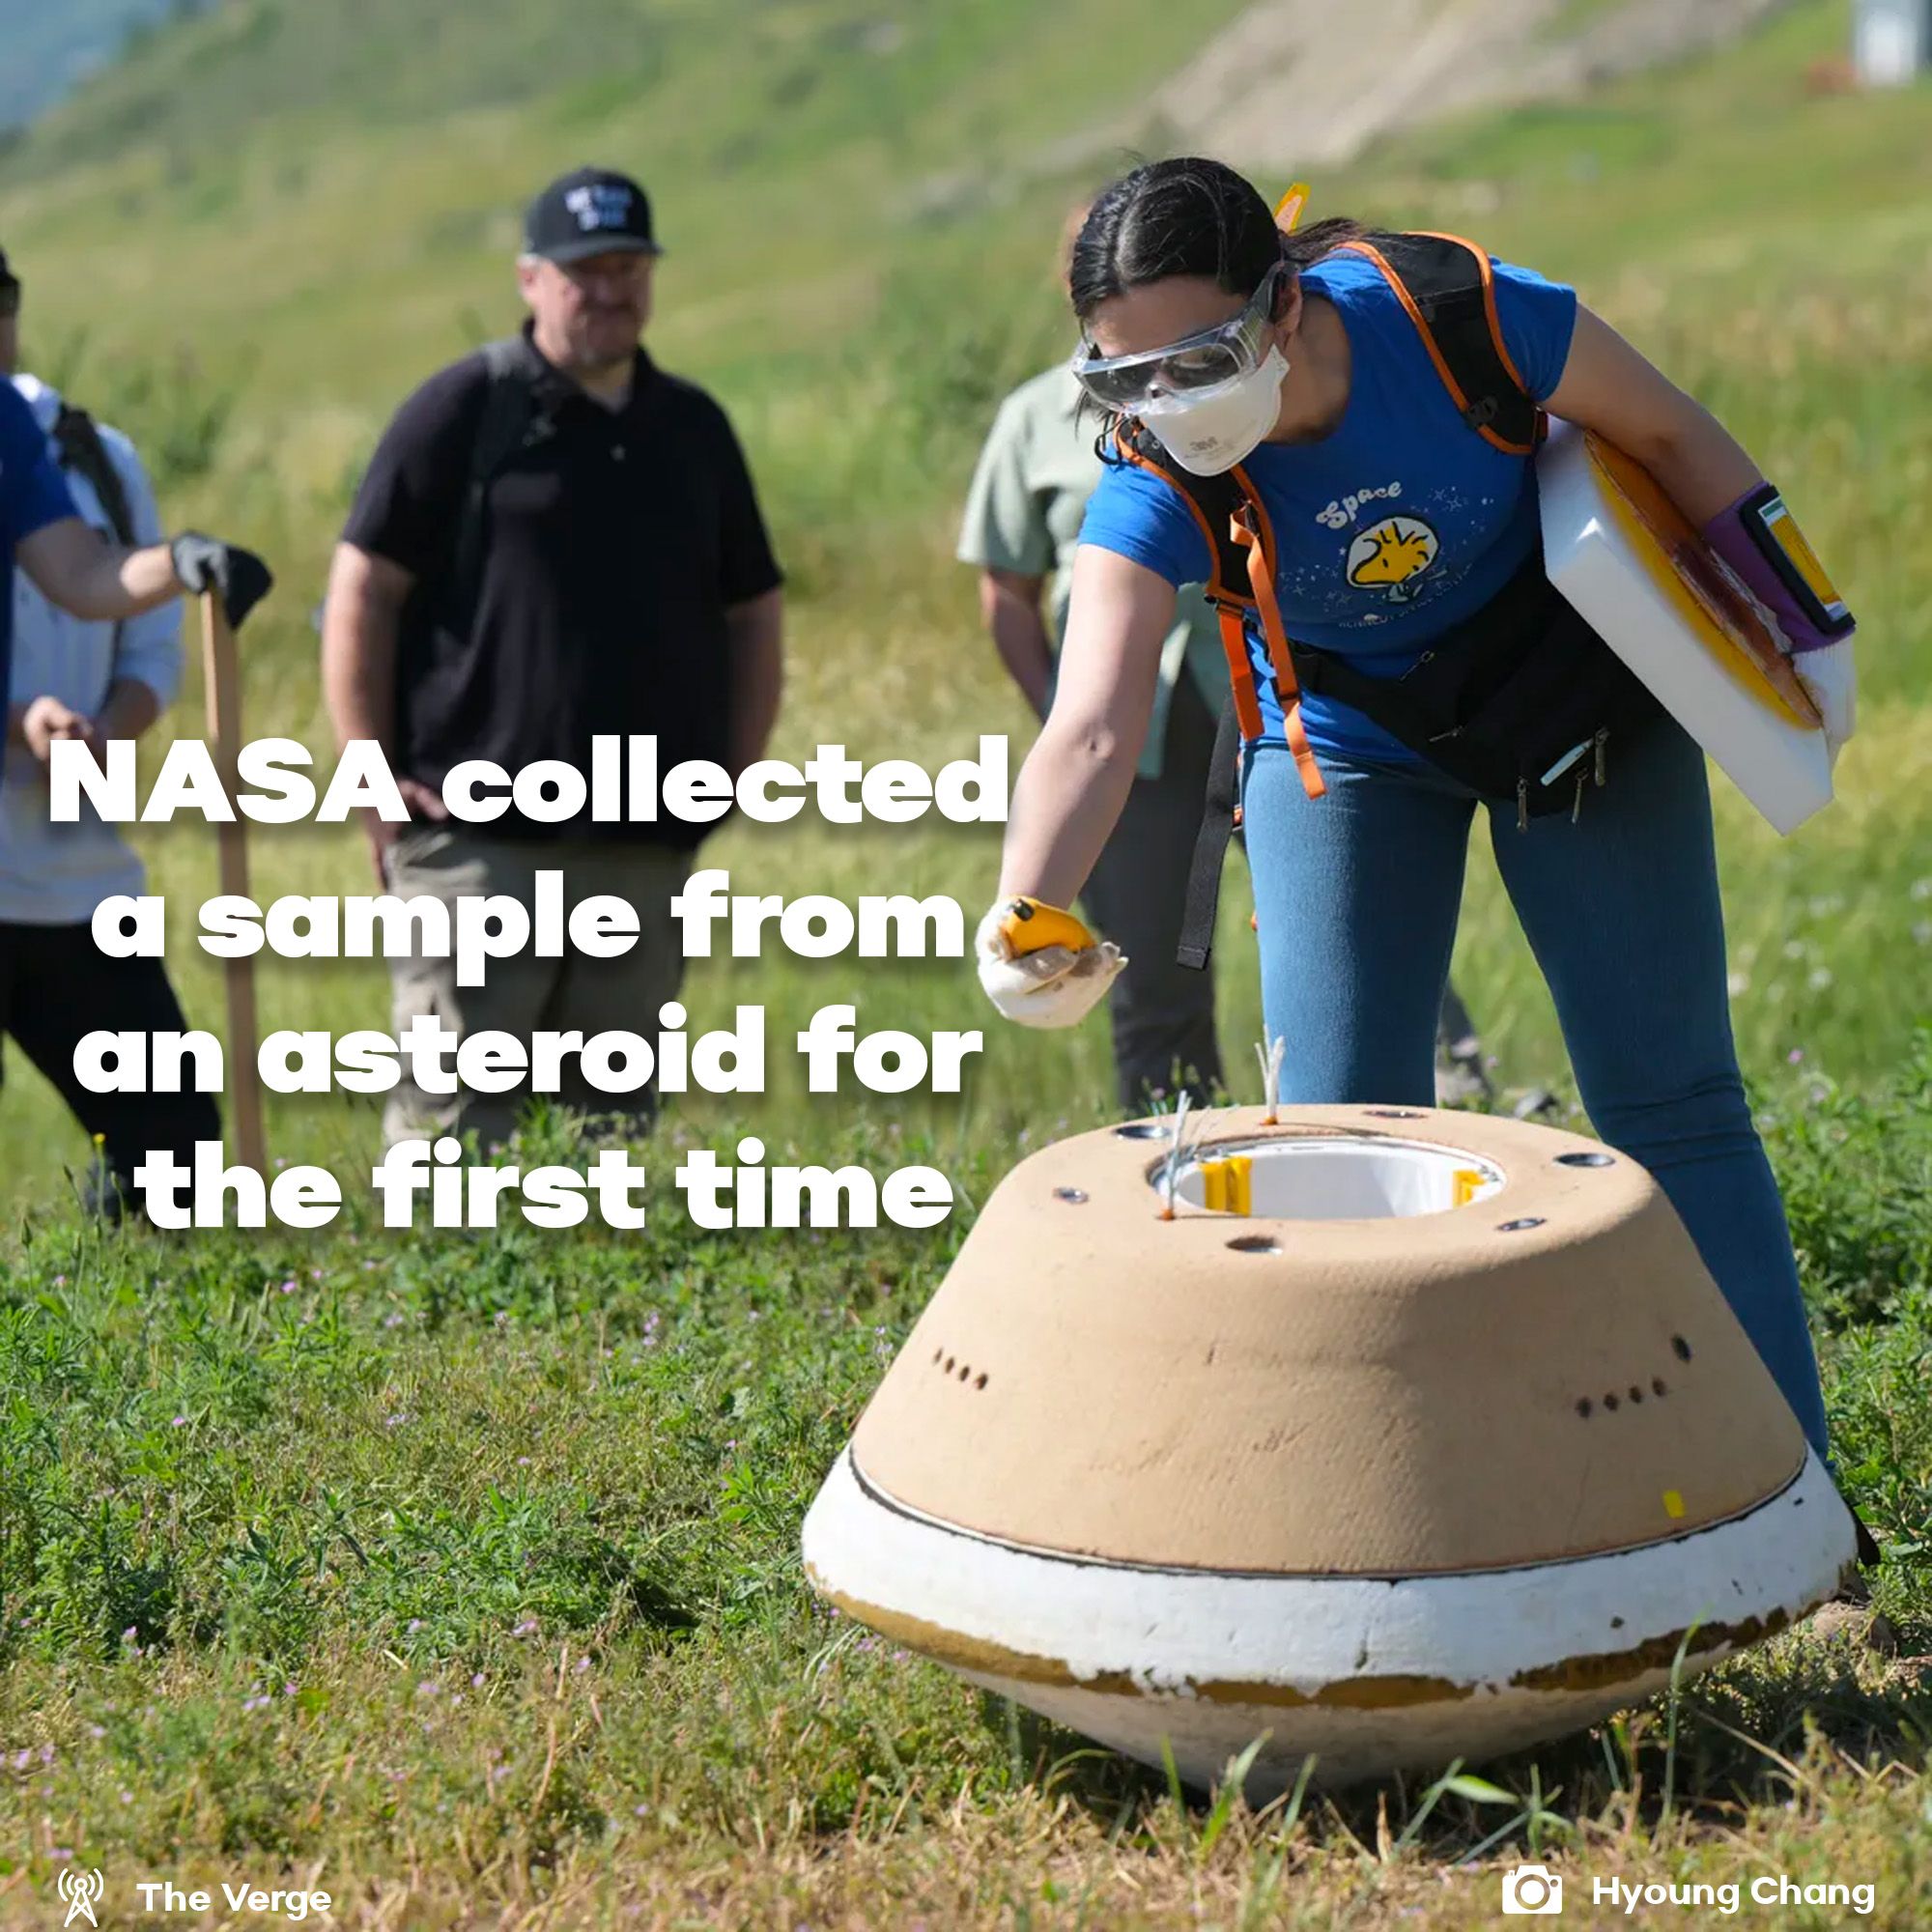 Nasa retrieved an asteroid